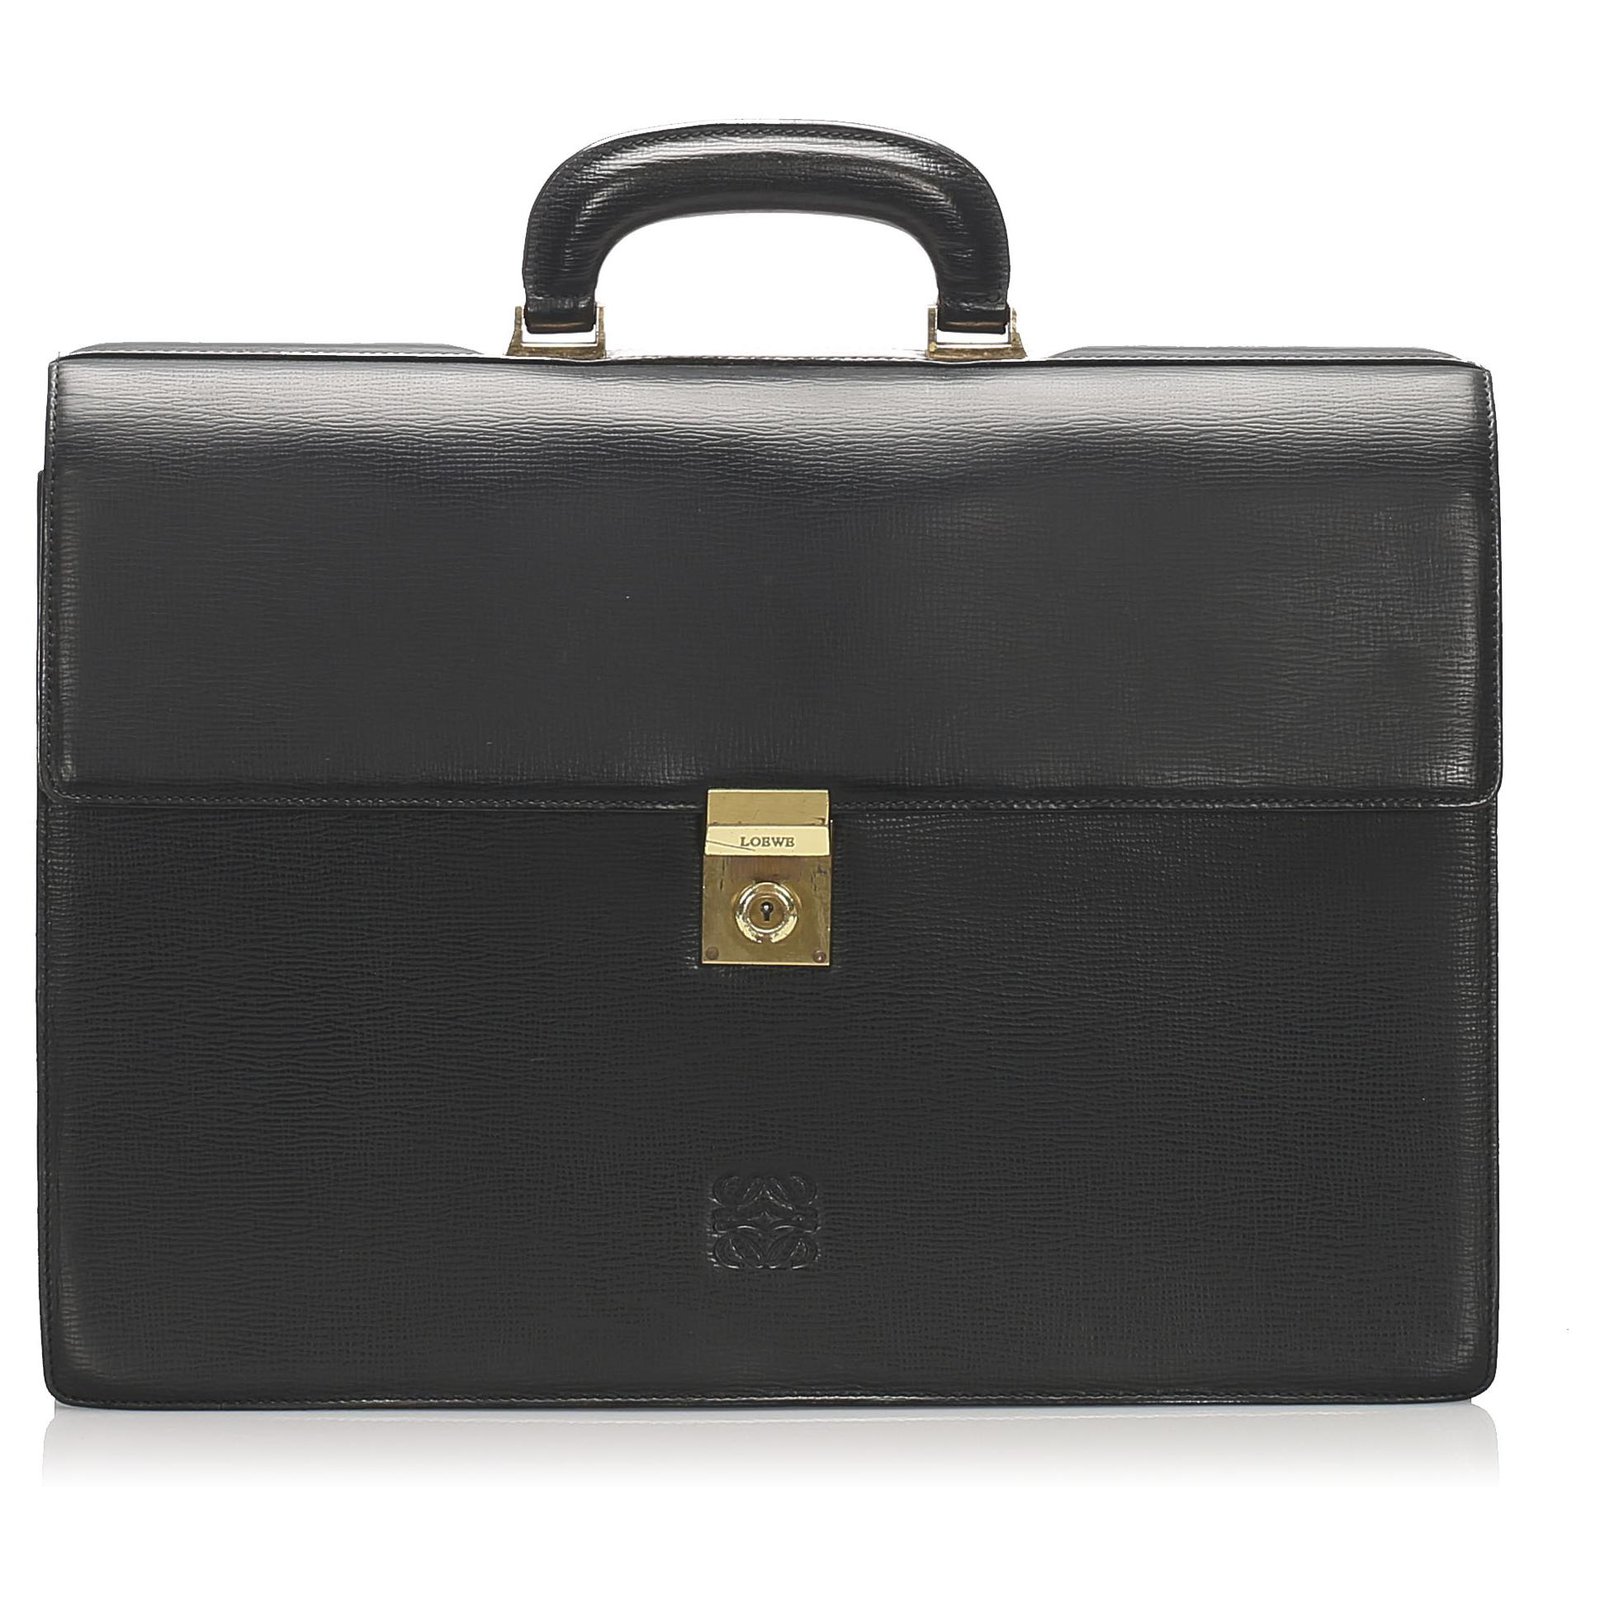 Loewe Loewe Black Leather Briefcase 